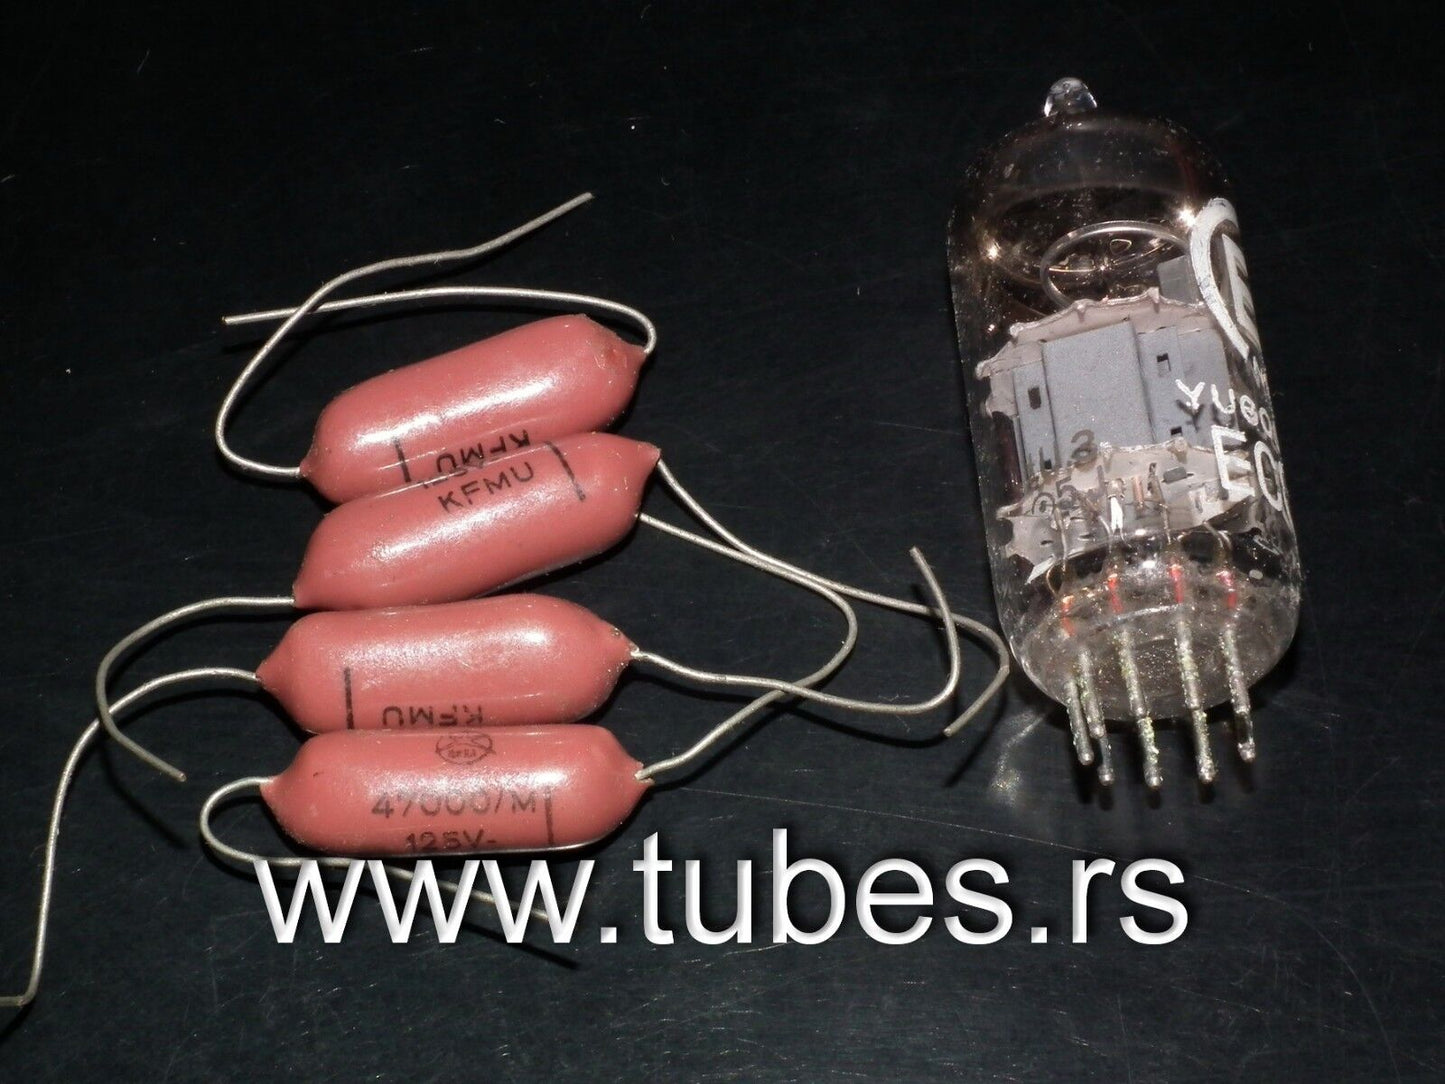 Four vintage NOS capacitors 47nF / 0.047uF 125V ISKRA KFMU metalized polyester